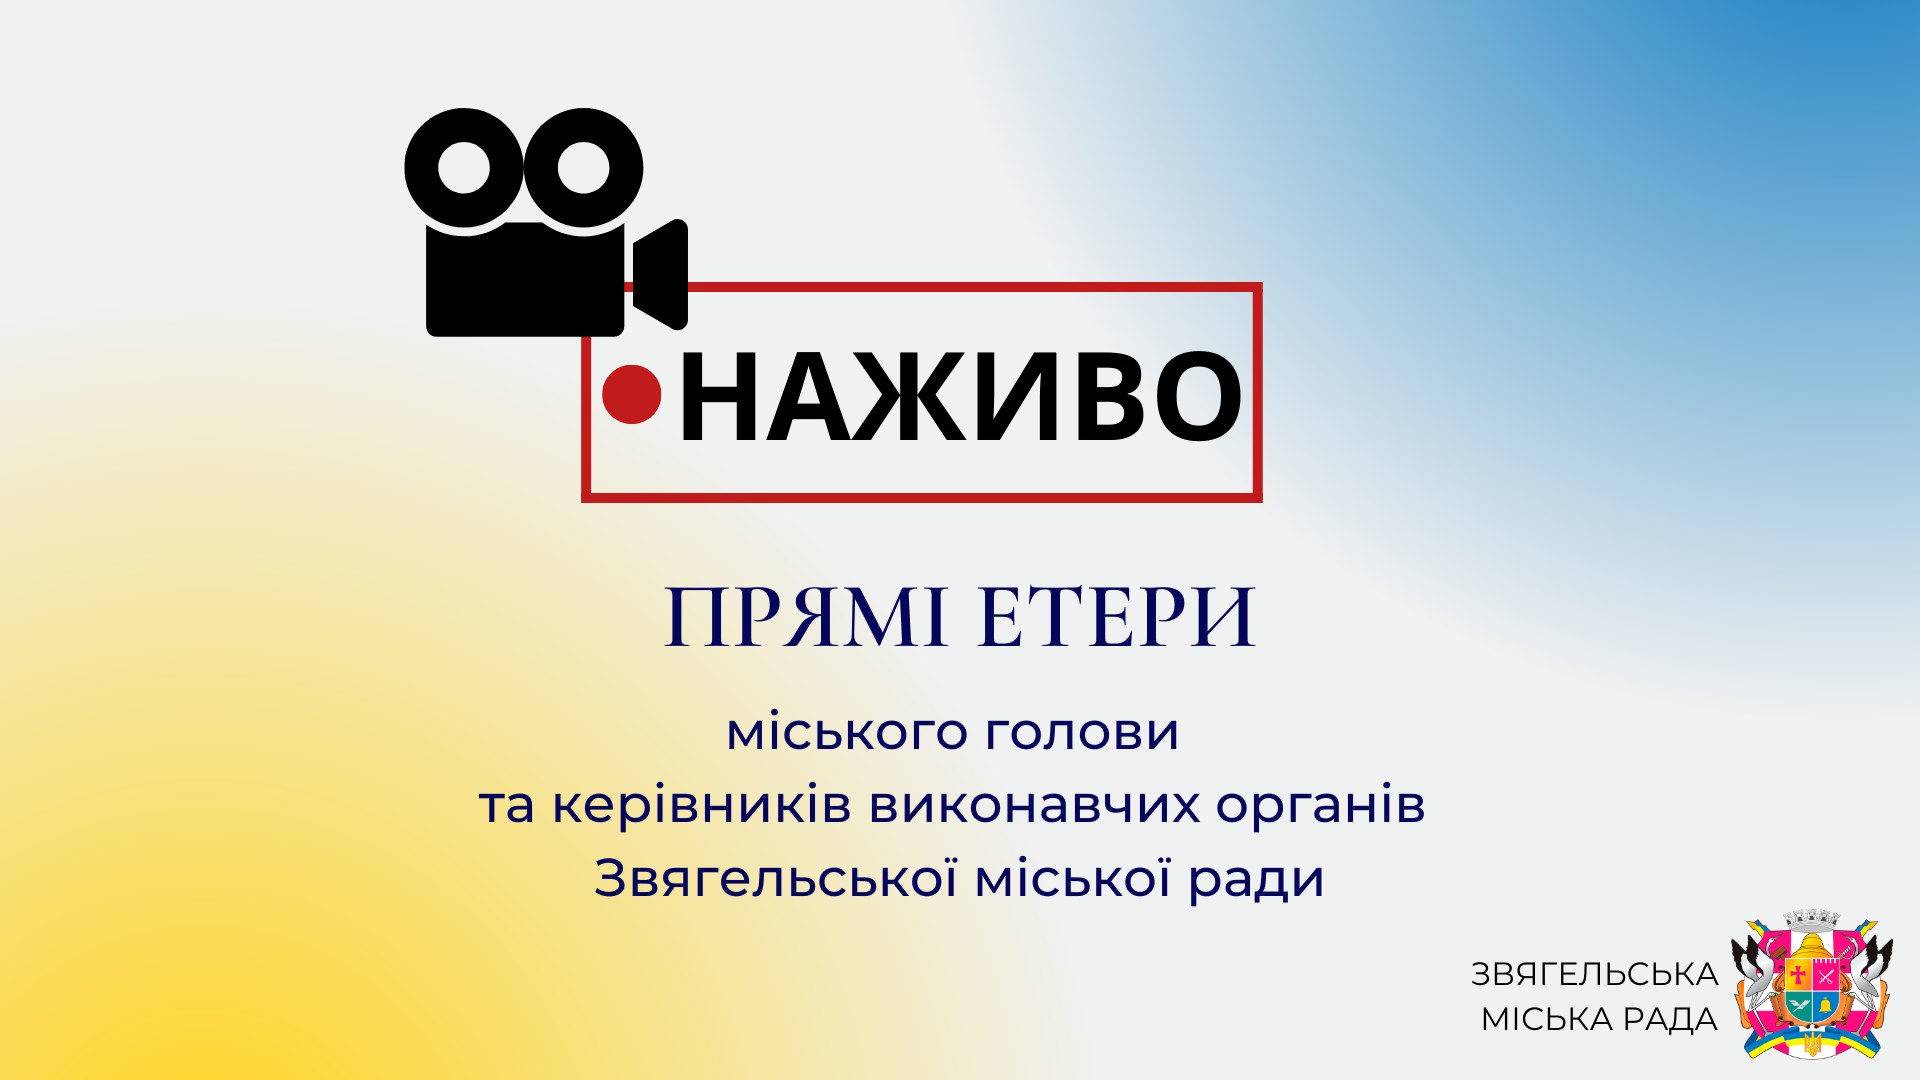 14 грудня о 18:00 відбудеться прямий етер з начальником управління культури і туризму міської ради Олександром Широкопоясом